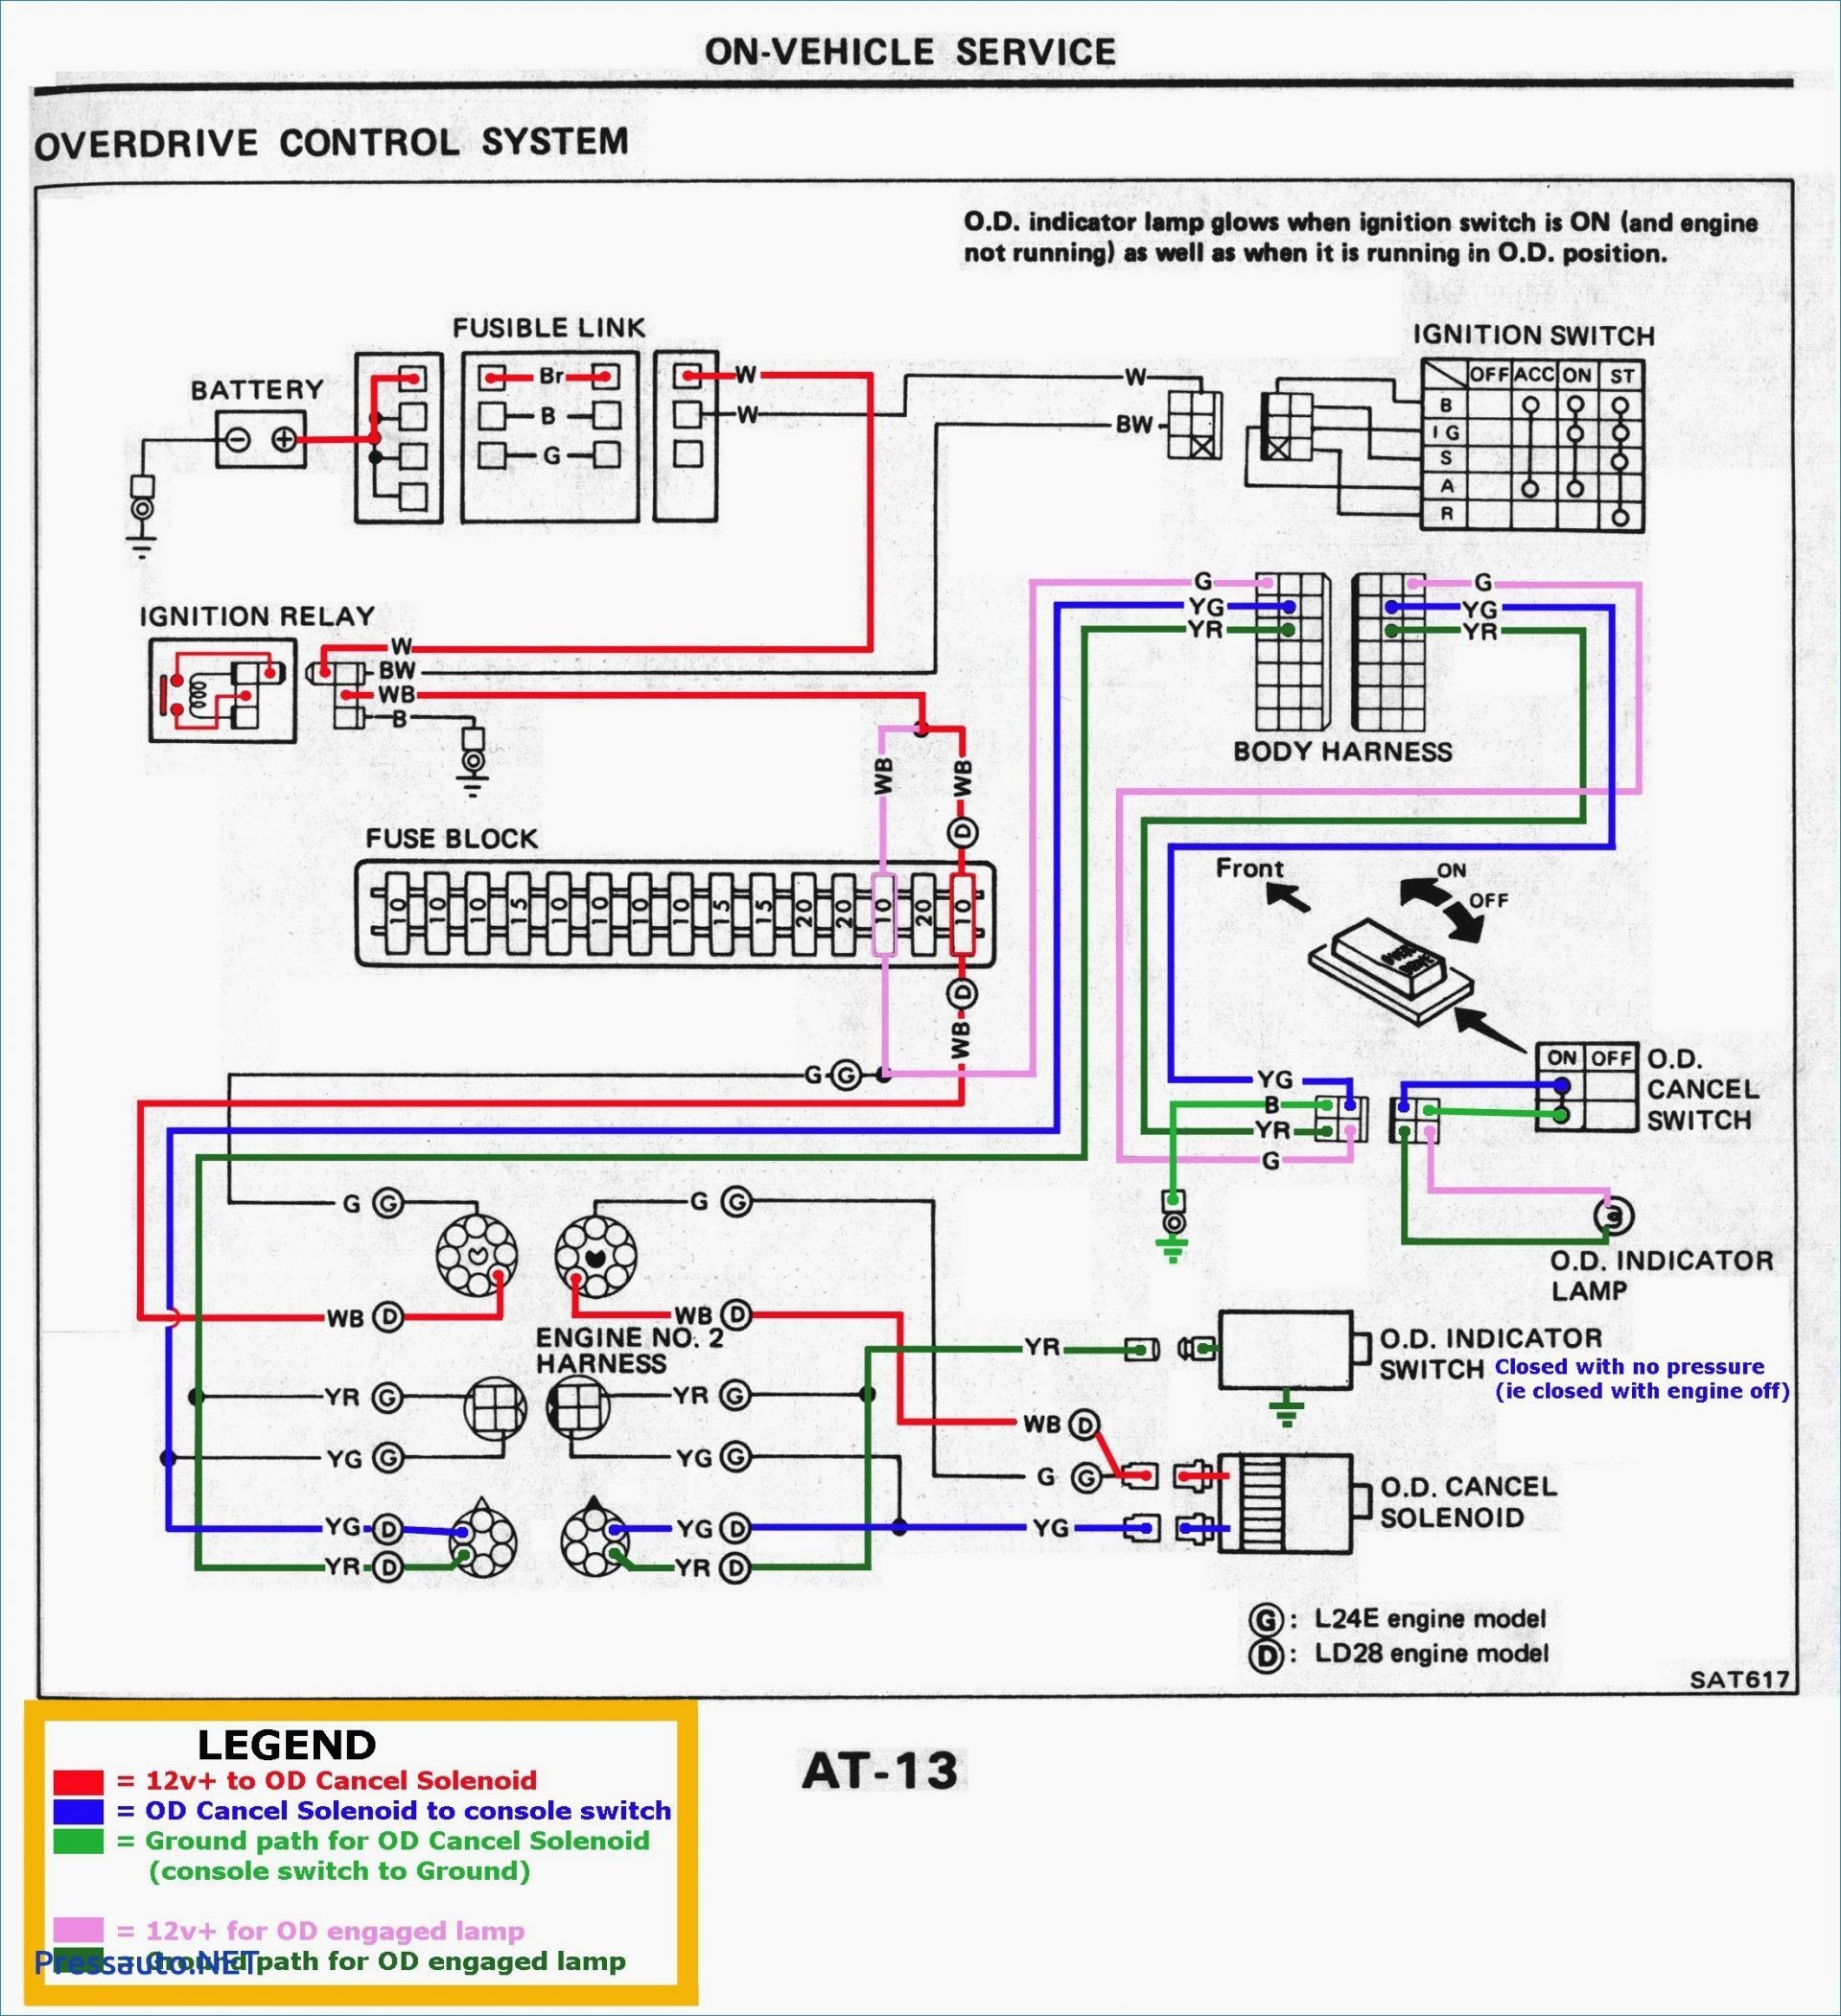 2002 Trailblazer Engine Diagram 2002 Chevy Silverado Wiring Diagram Collection Of 2002 Trailblazer Engine Diagram